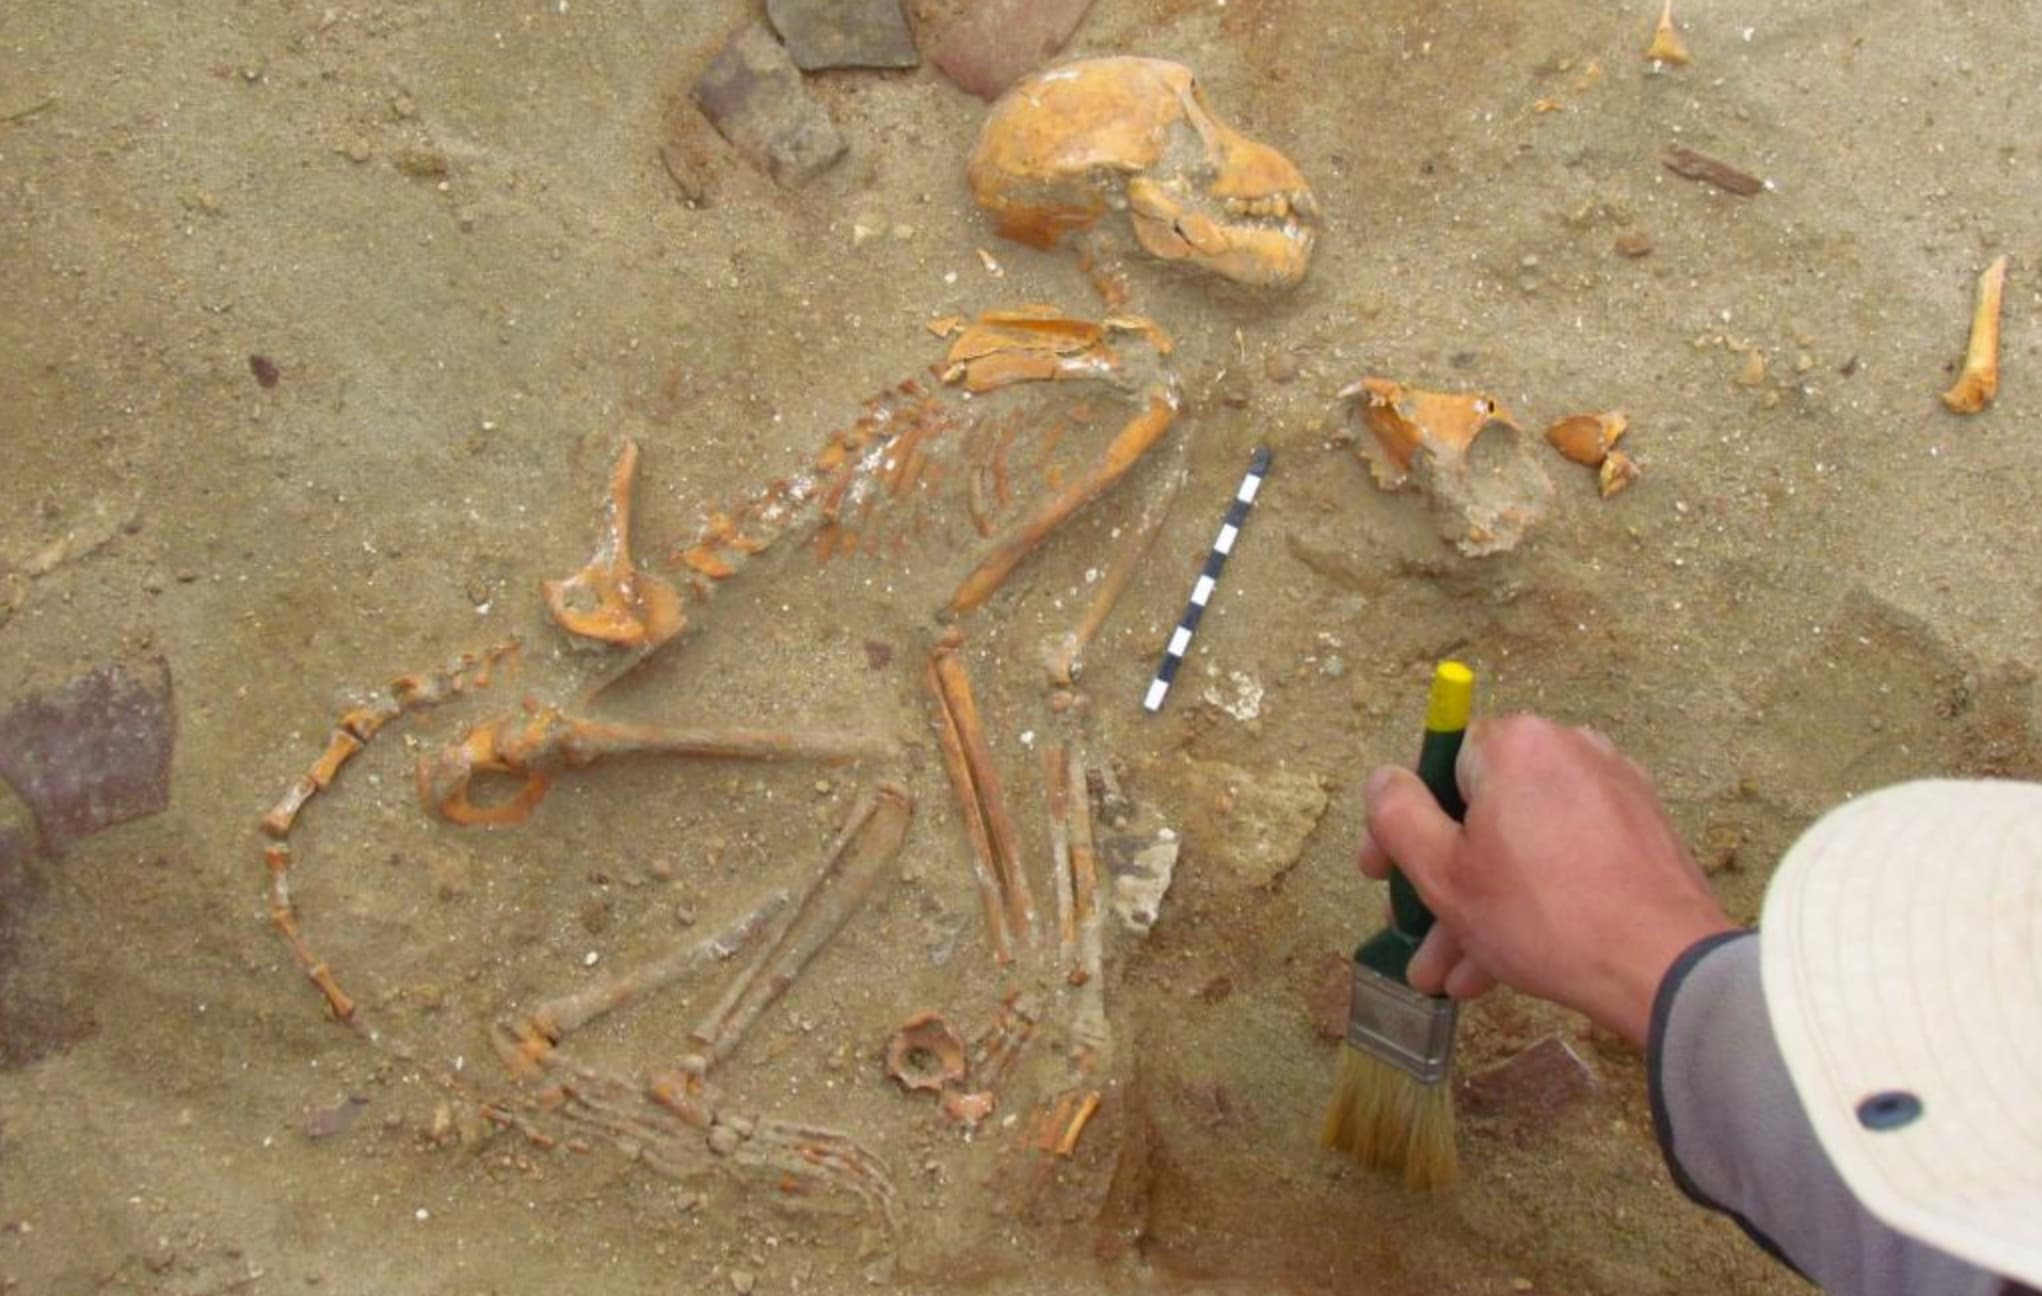 Esqueleto de macaco achado em cemitério de animais de estimação em Berenice. Crédito: Marta Osypińska/Institute of Archaeology and Ethnology of the Polish Academy of Sciences